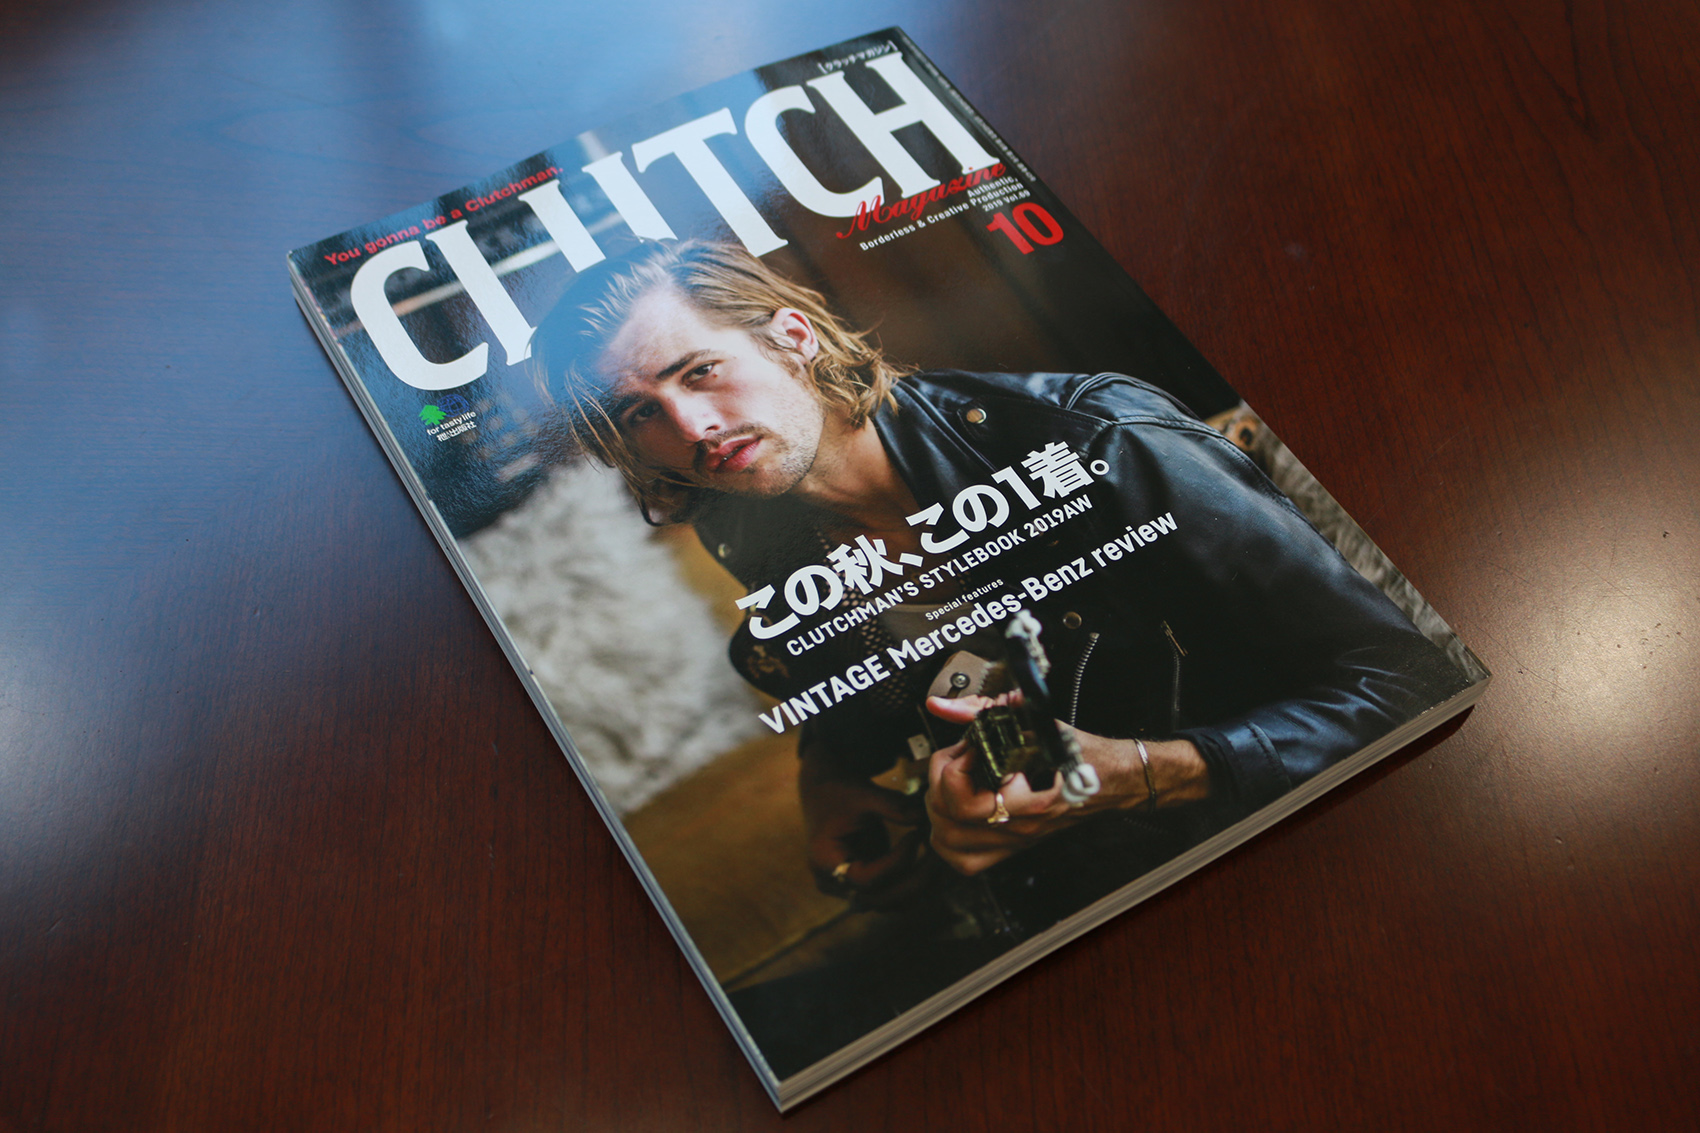 CLUTCH magazine